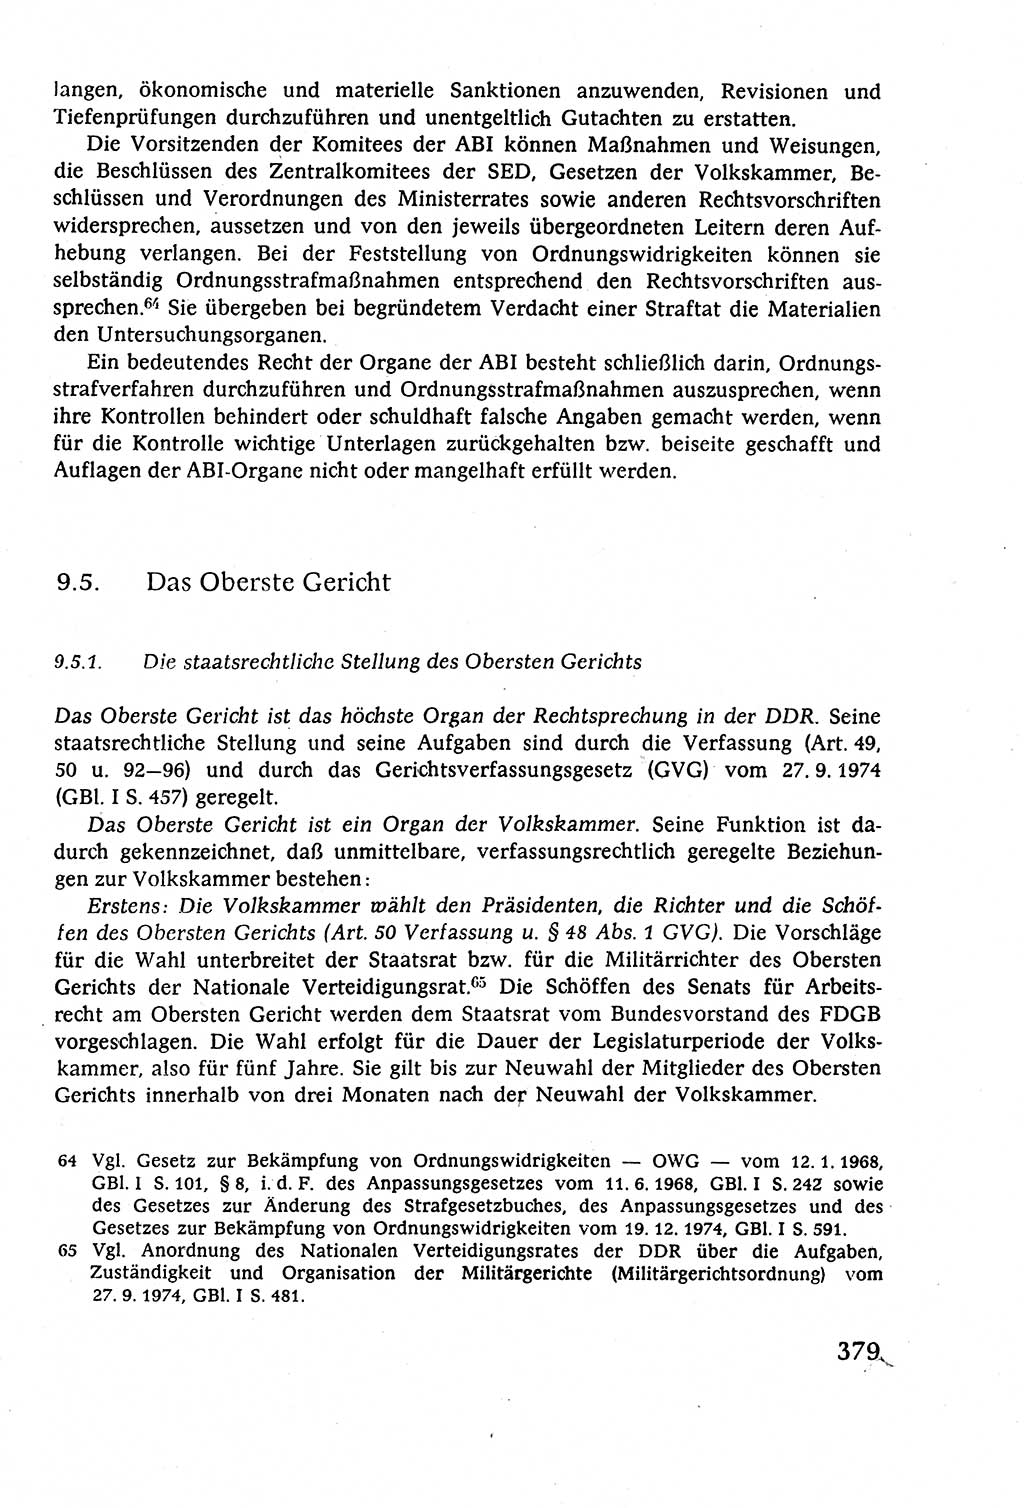 Staatsrecht der DDR (Deutsche Demokratische Republik), Lehrbuch 1977, Seite 379 (St.-R. DDR Lb. 1977, S. 379)